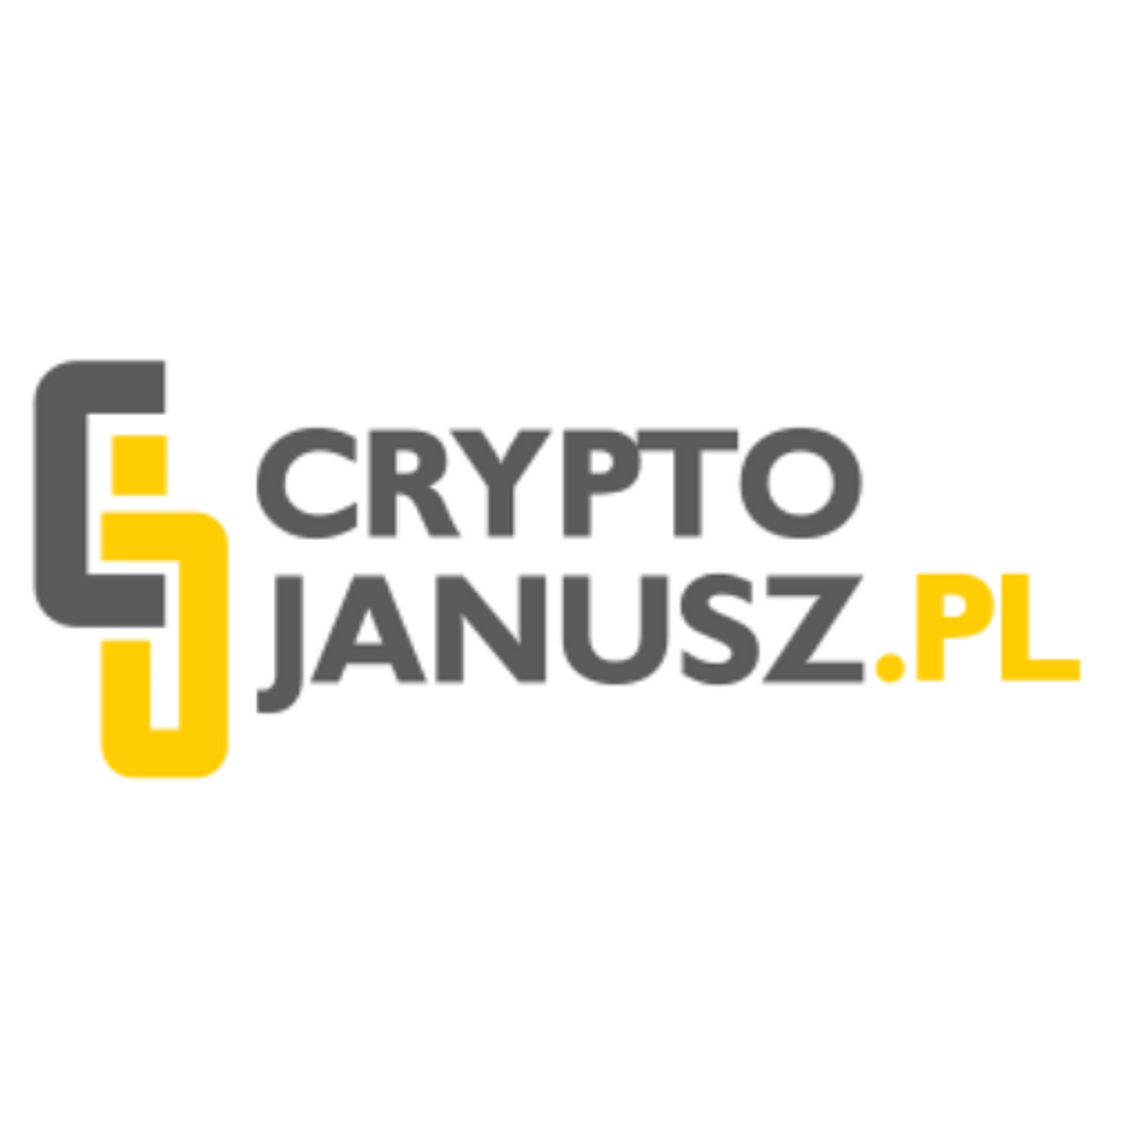 Blog o kryptowalutach, Portal z wiadomościami Bitcoin - Cryptojanusz.pl